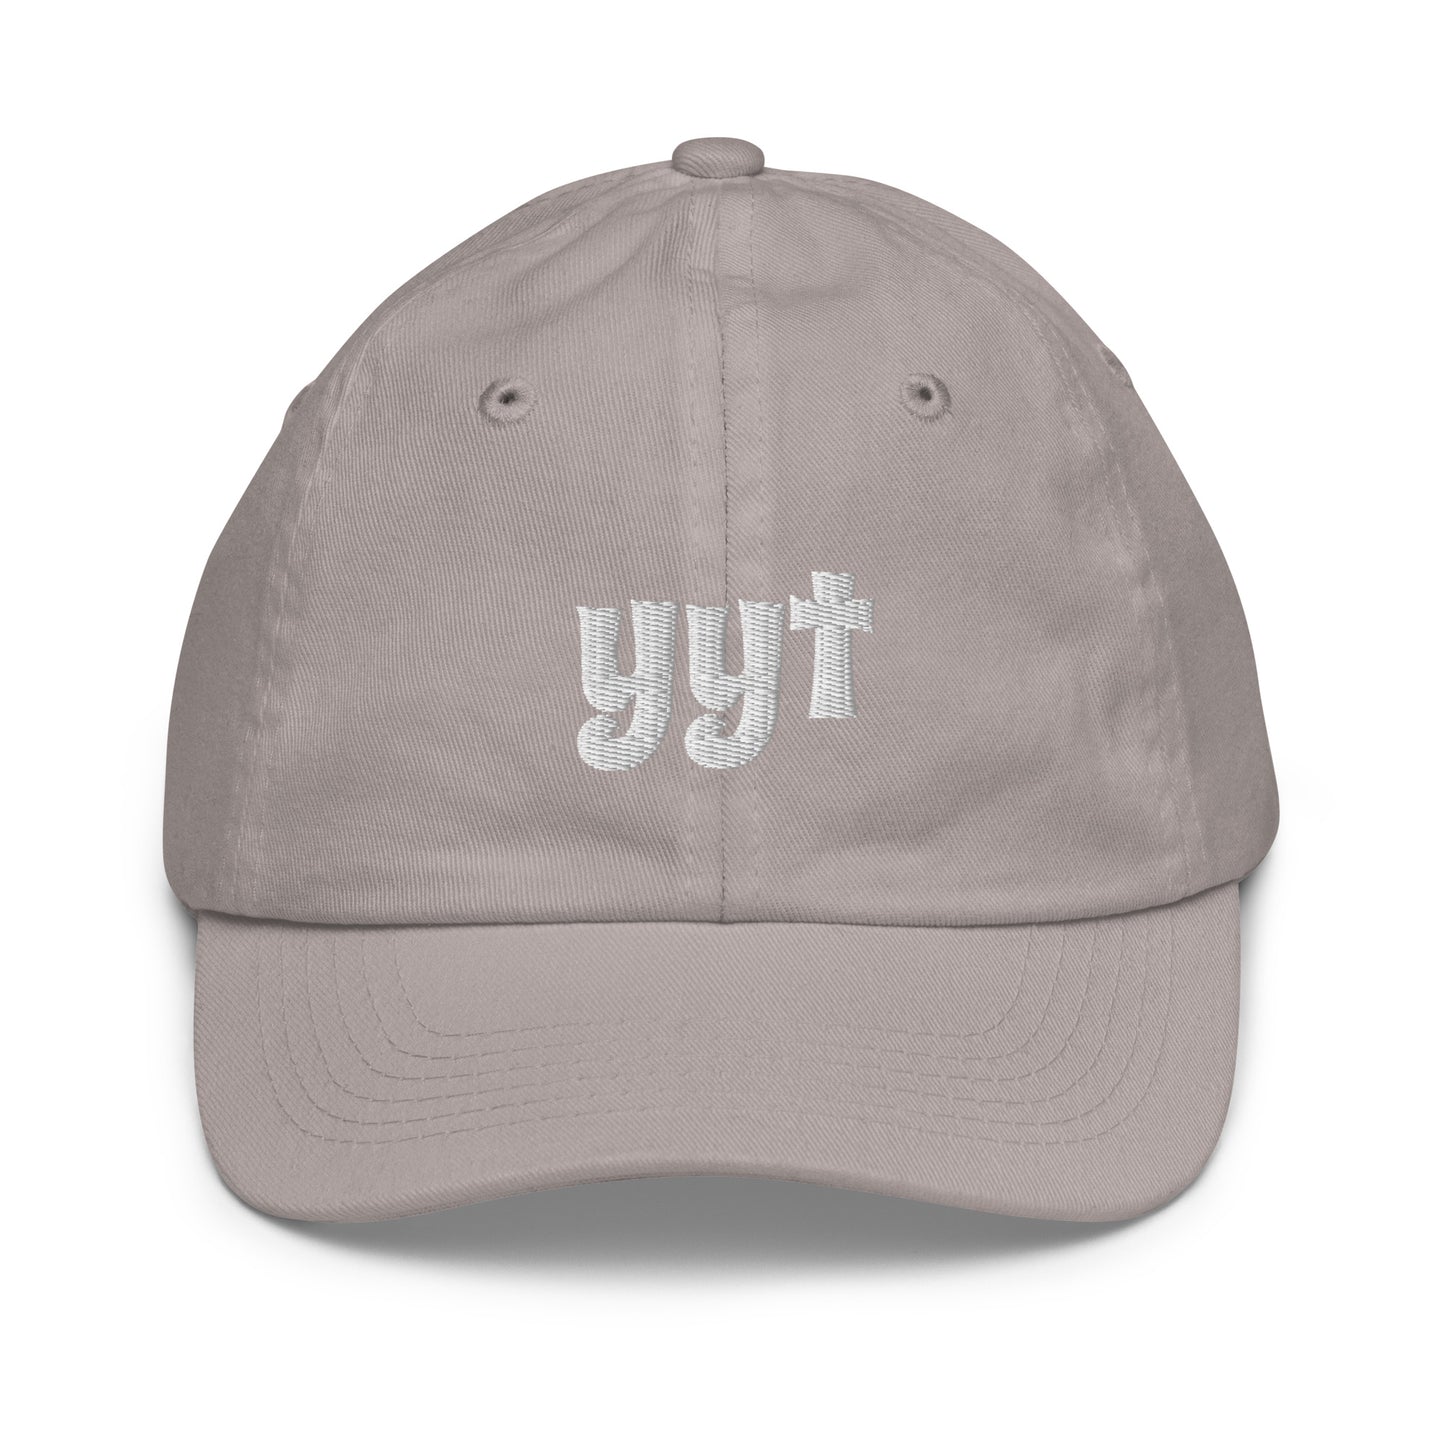 Groovy Kid's Baseball Cap - White • YYT St. John's • YHM Designs - Image 19